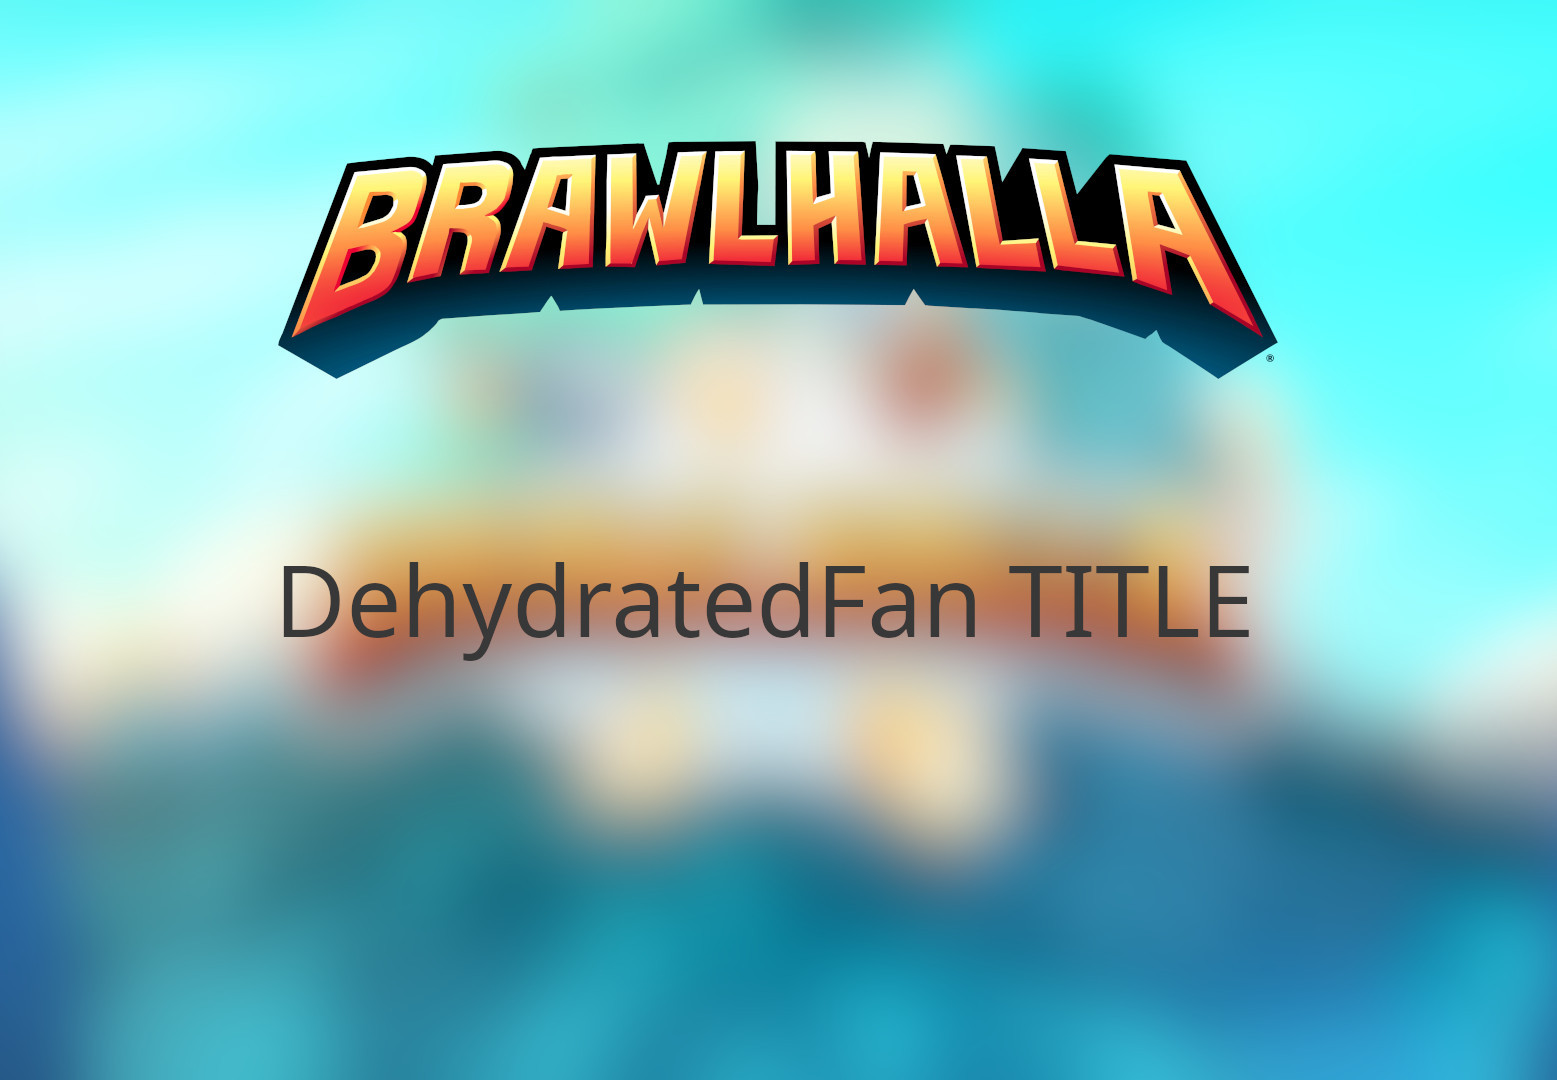 Brawlhalla - DehydratedFan Title DLC CD Key